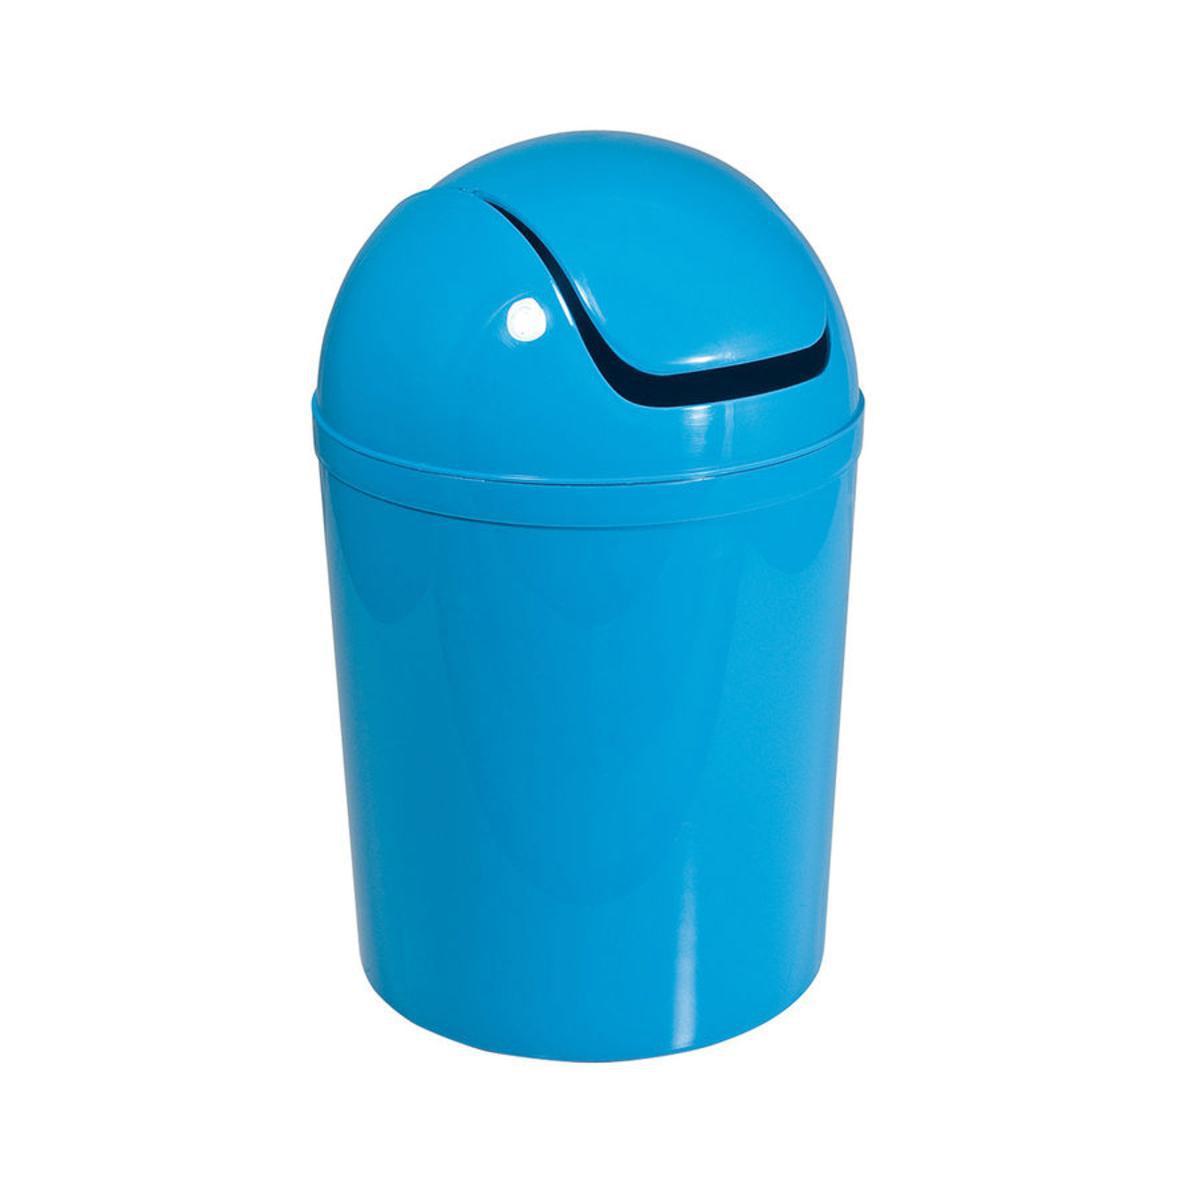 Poubelle boule 5l en plastique - 19 x 31 cm - Bleu